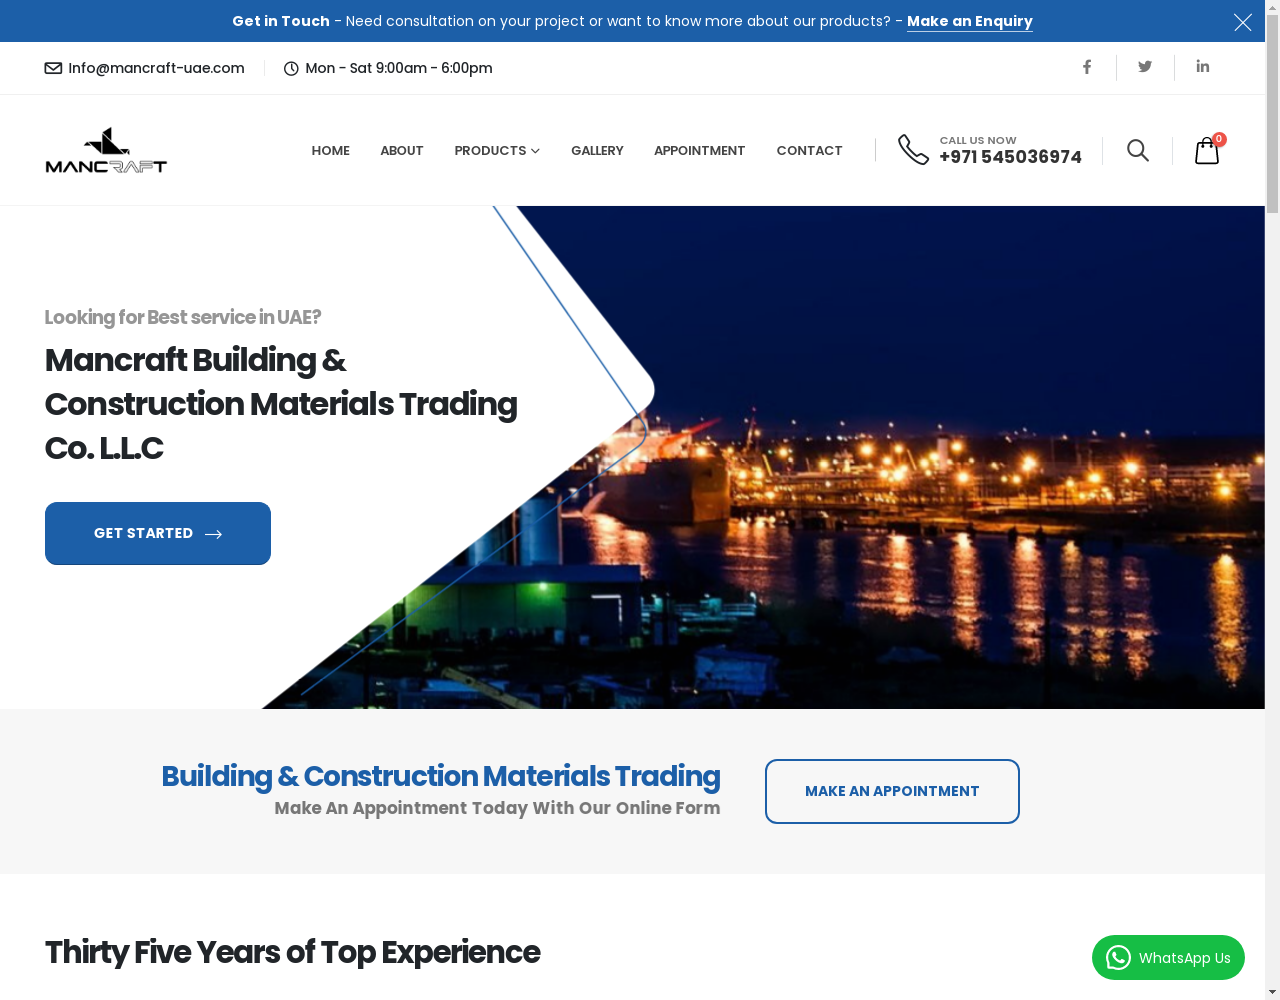 Mancraft Building & Construction Materials Trading Co. L.L.C